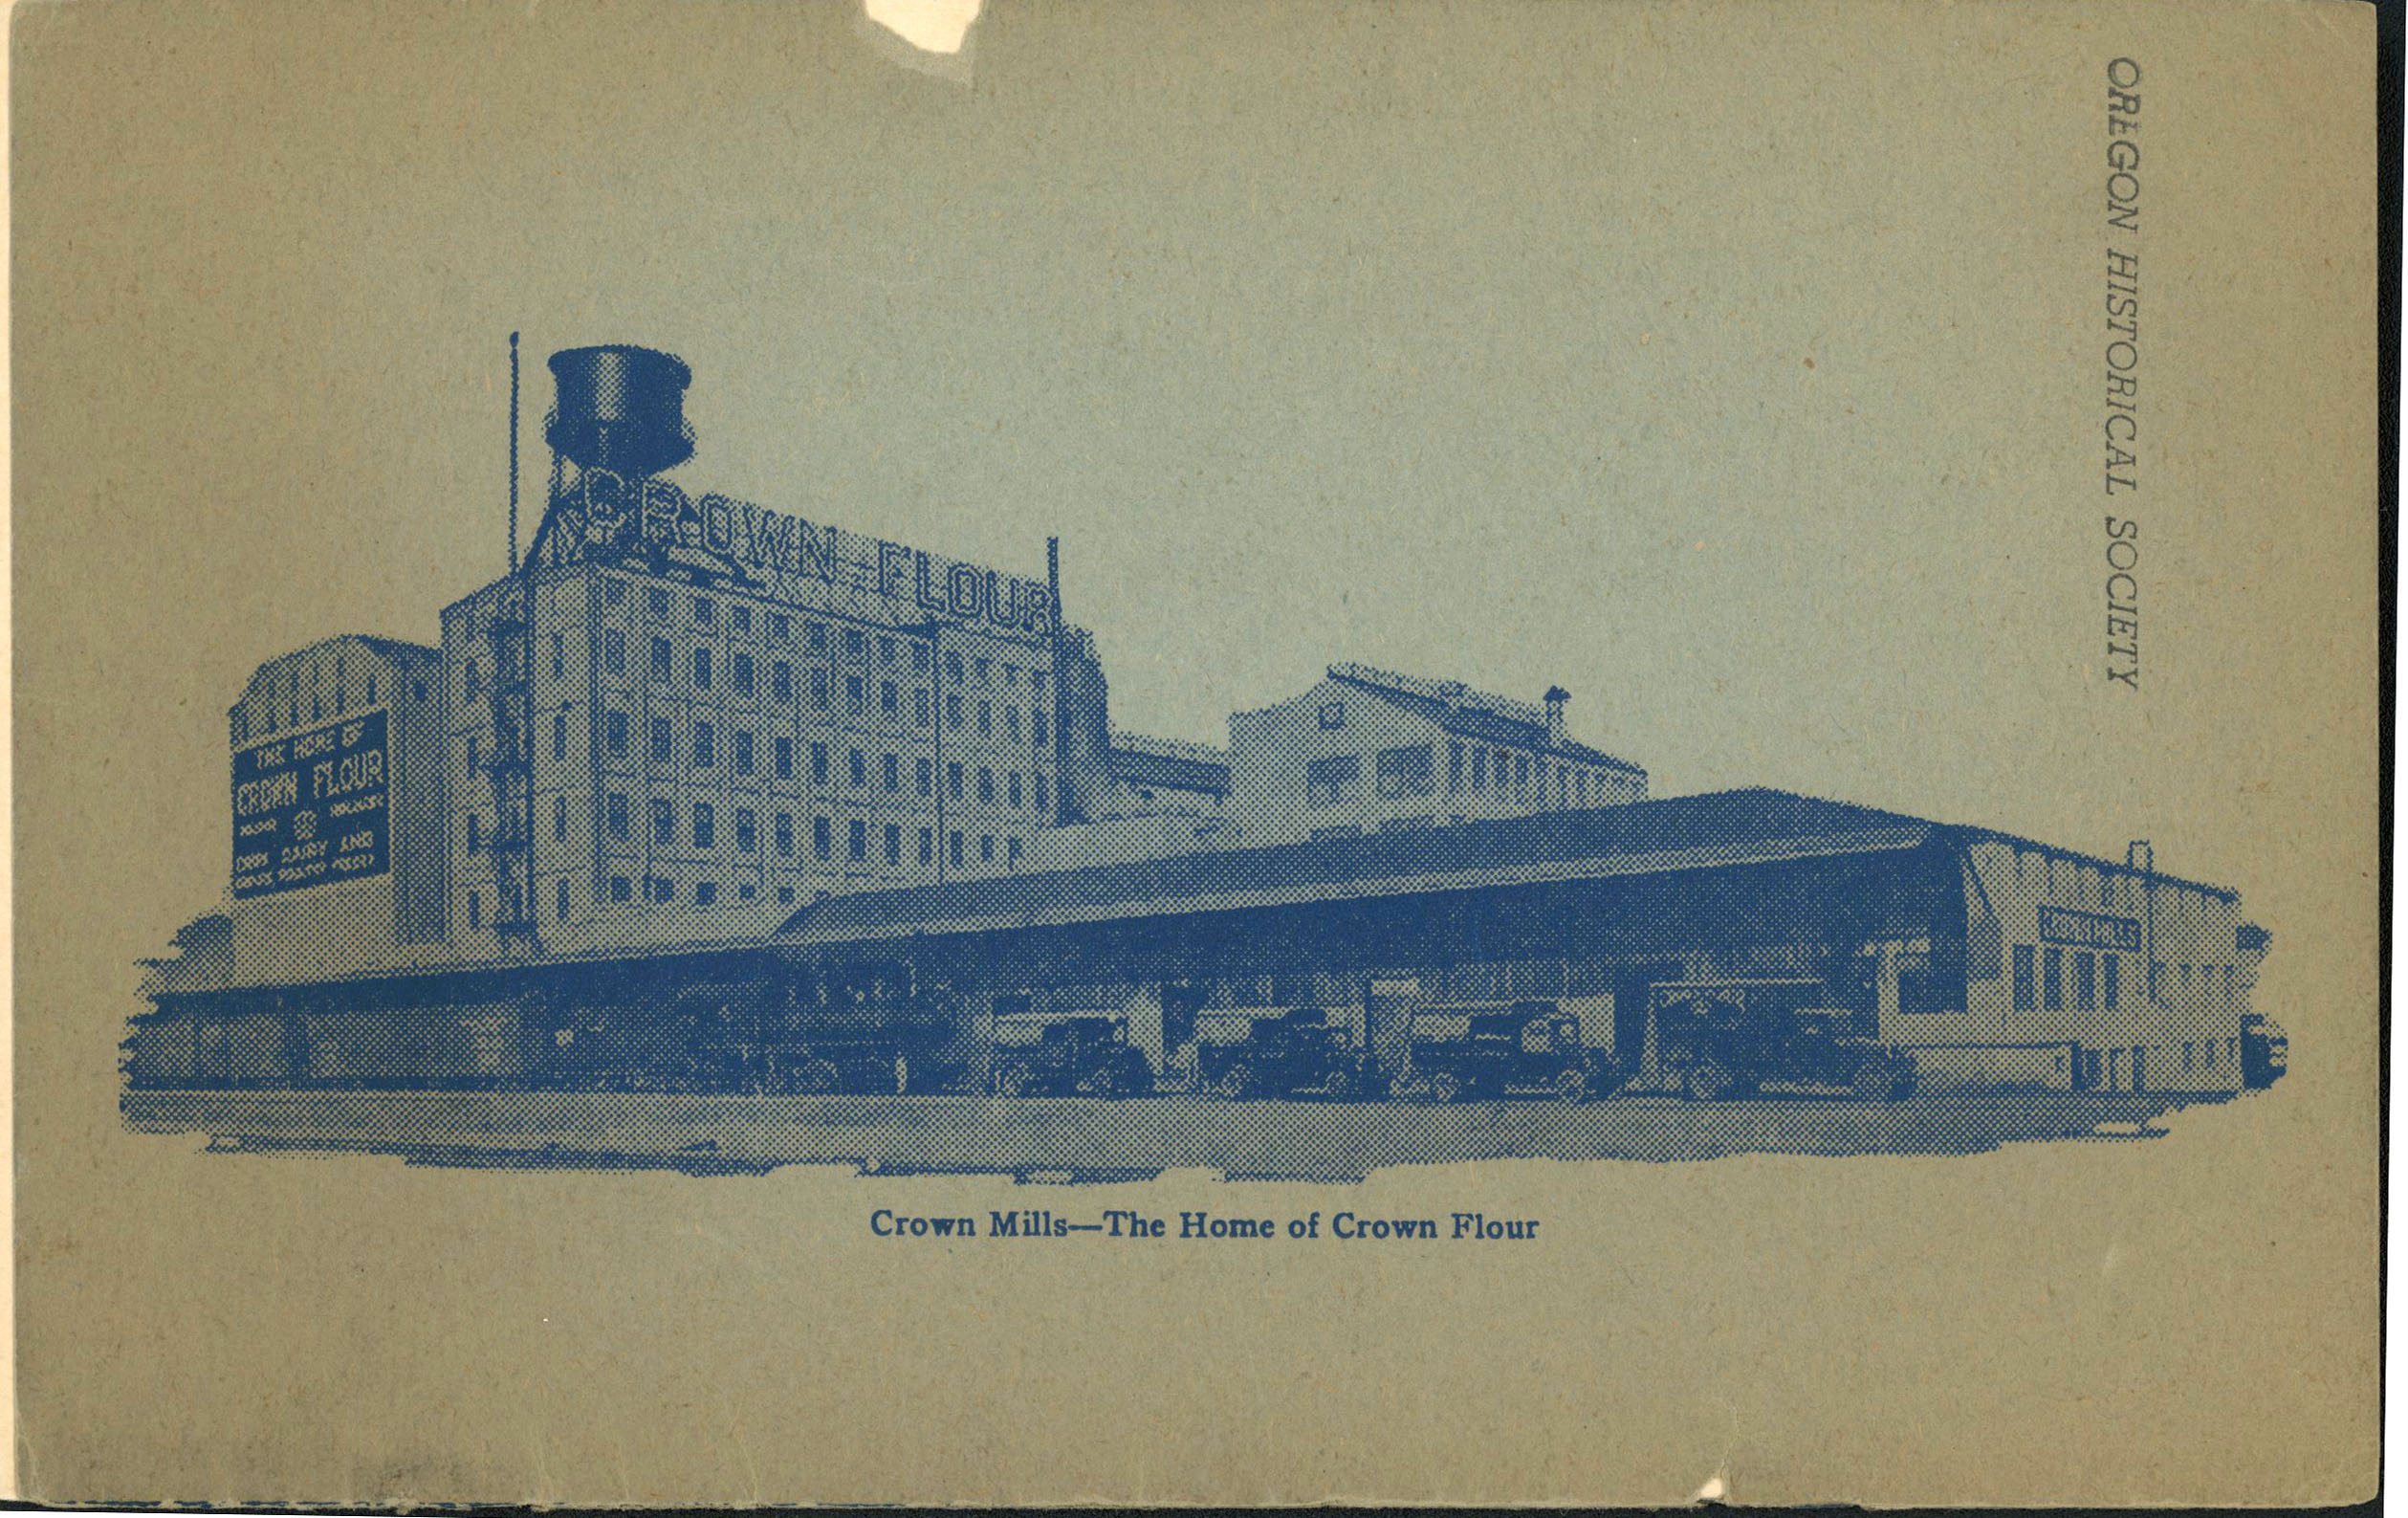 Crown/Centennial Mills